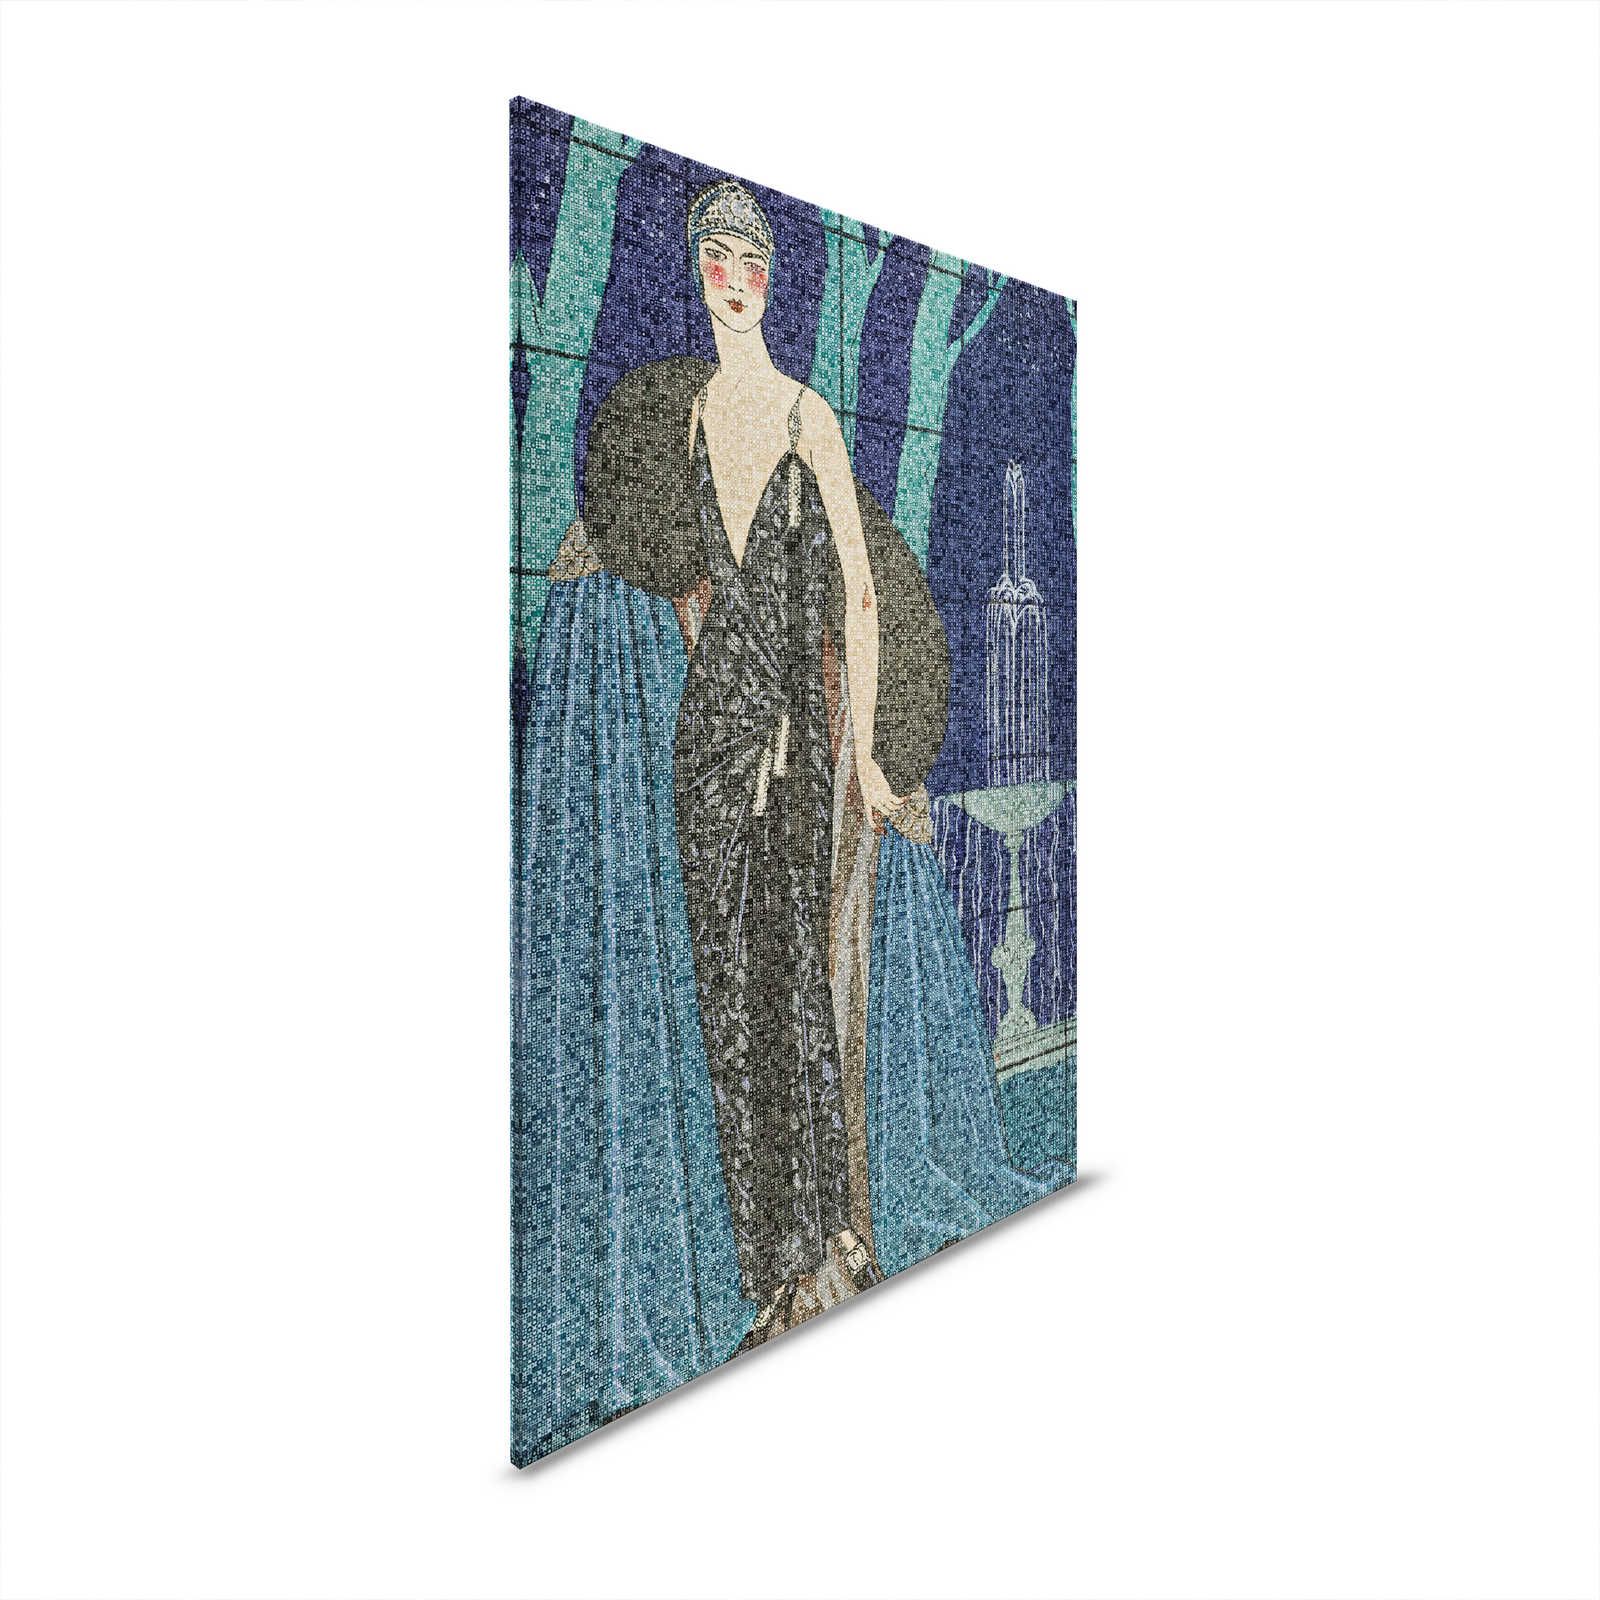 Scala 3 - Art Deko Leinwandbild elegantes Frauen Motiv – 0,80 m x 1,20 m
